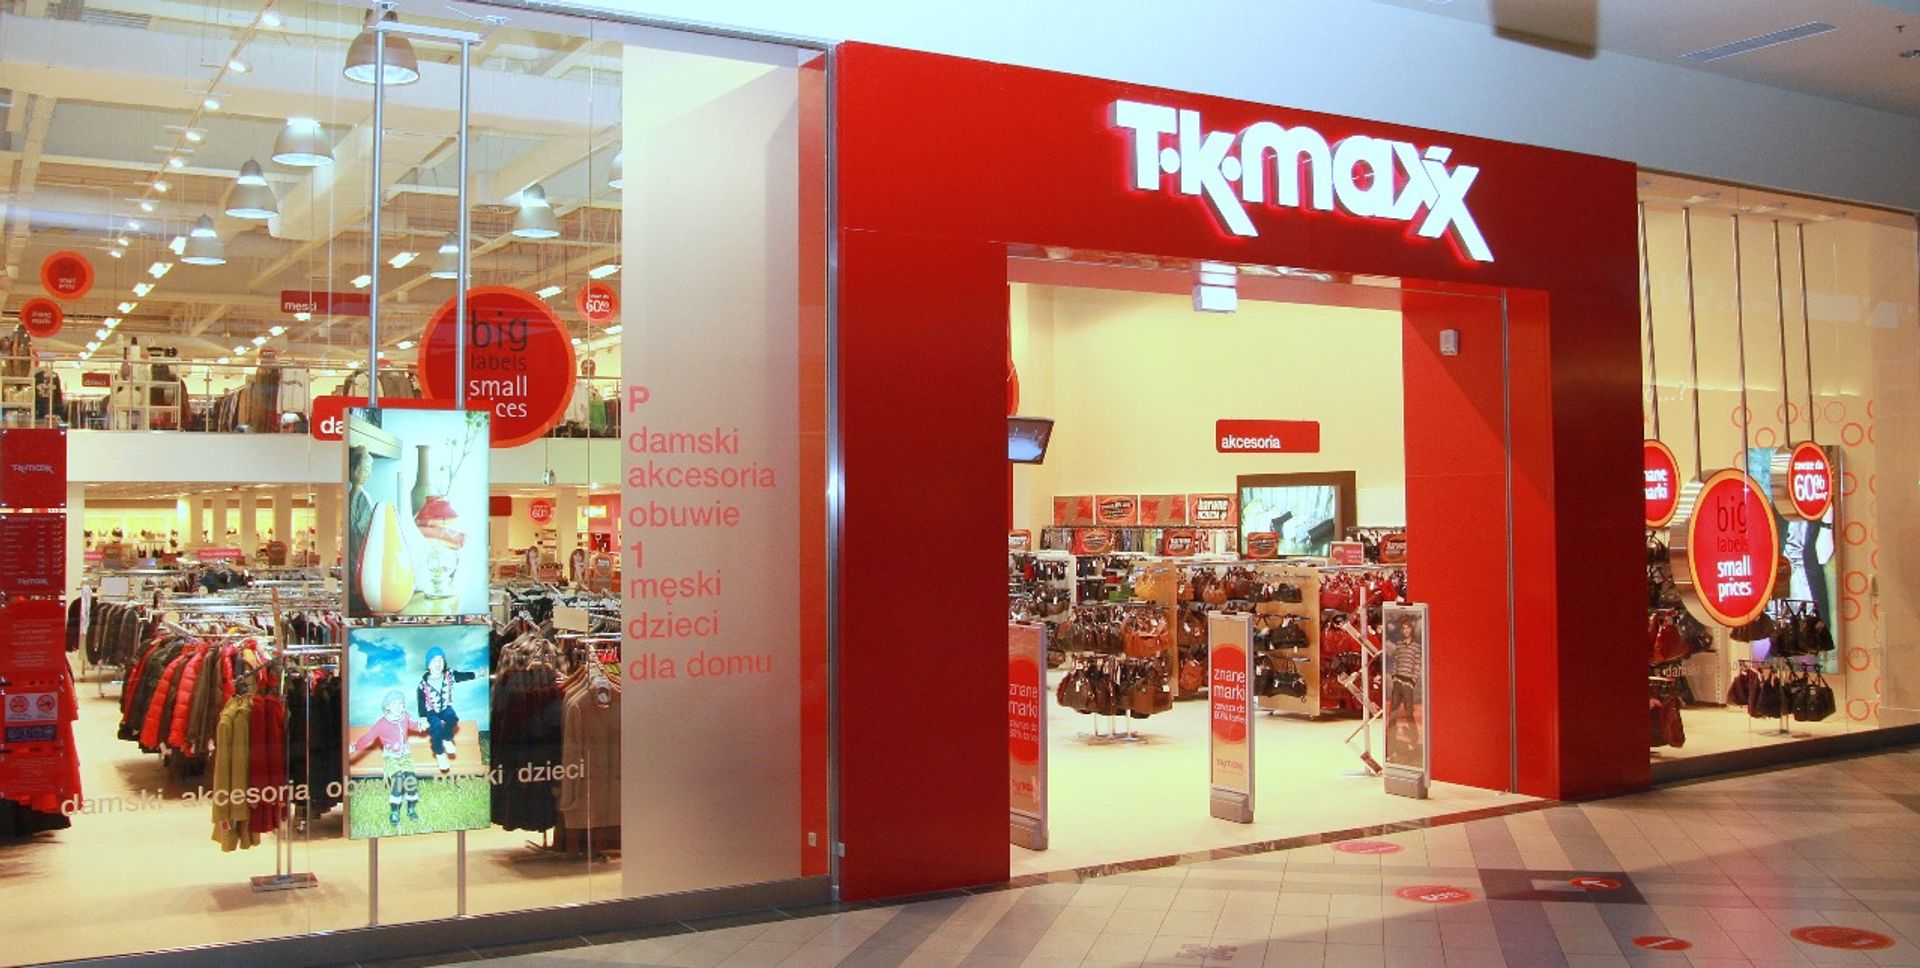  Dwie nowe lokalizacje TK Maxx w Polsce